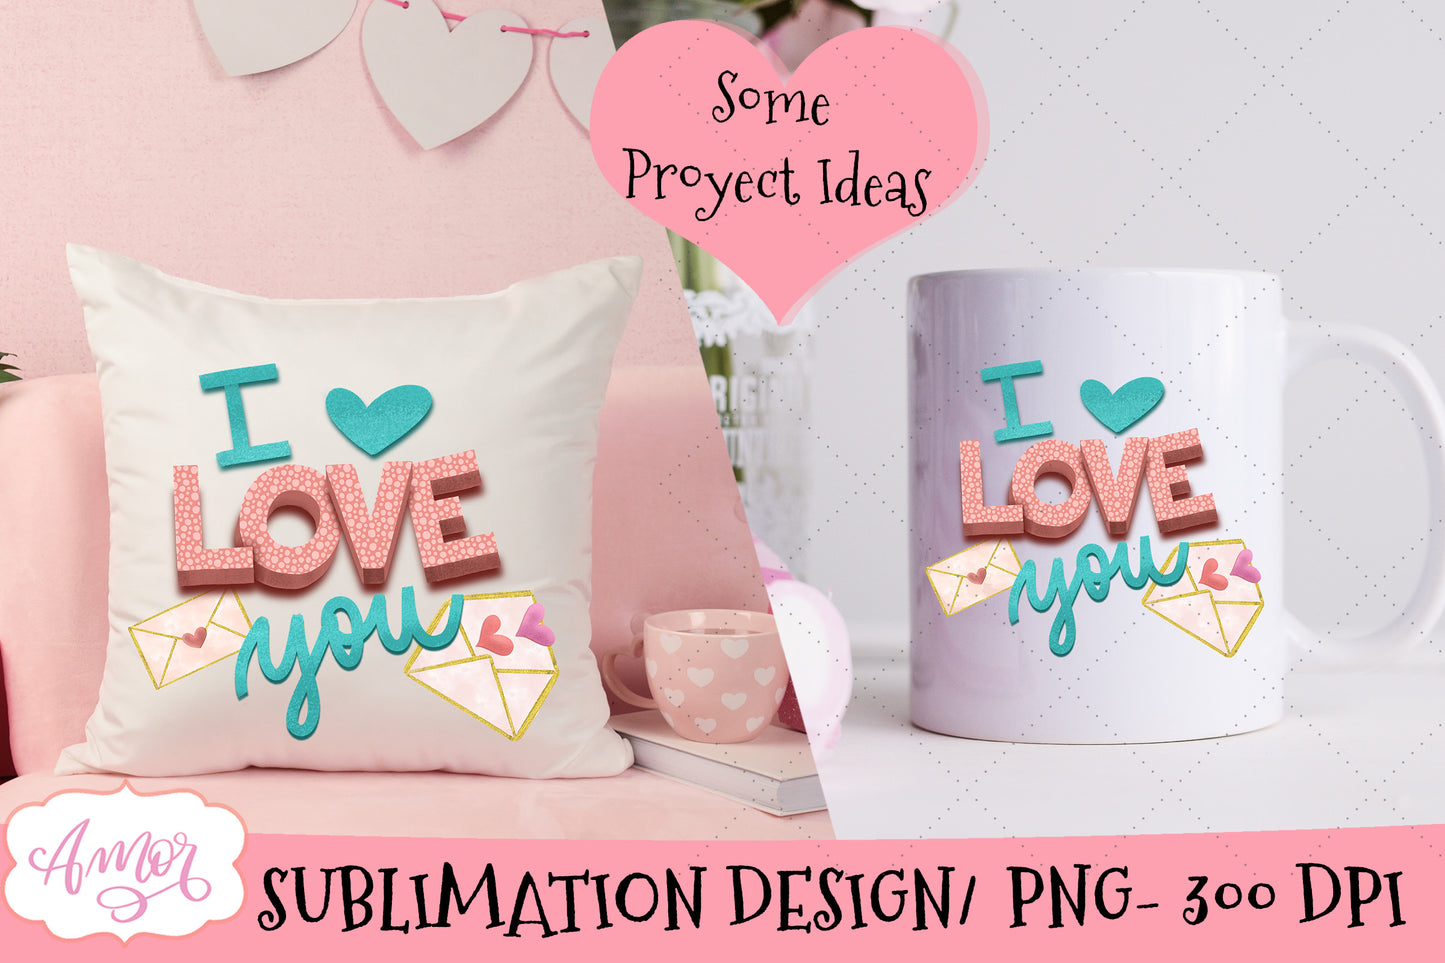 I Love You PNG design for sublimation